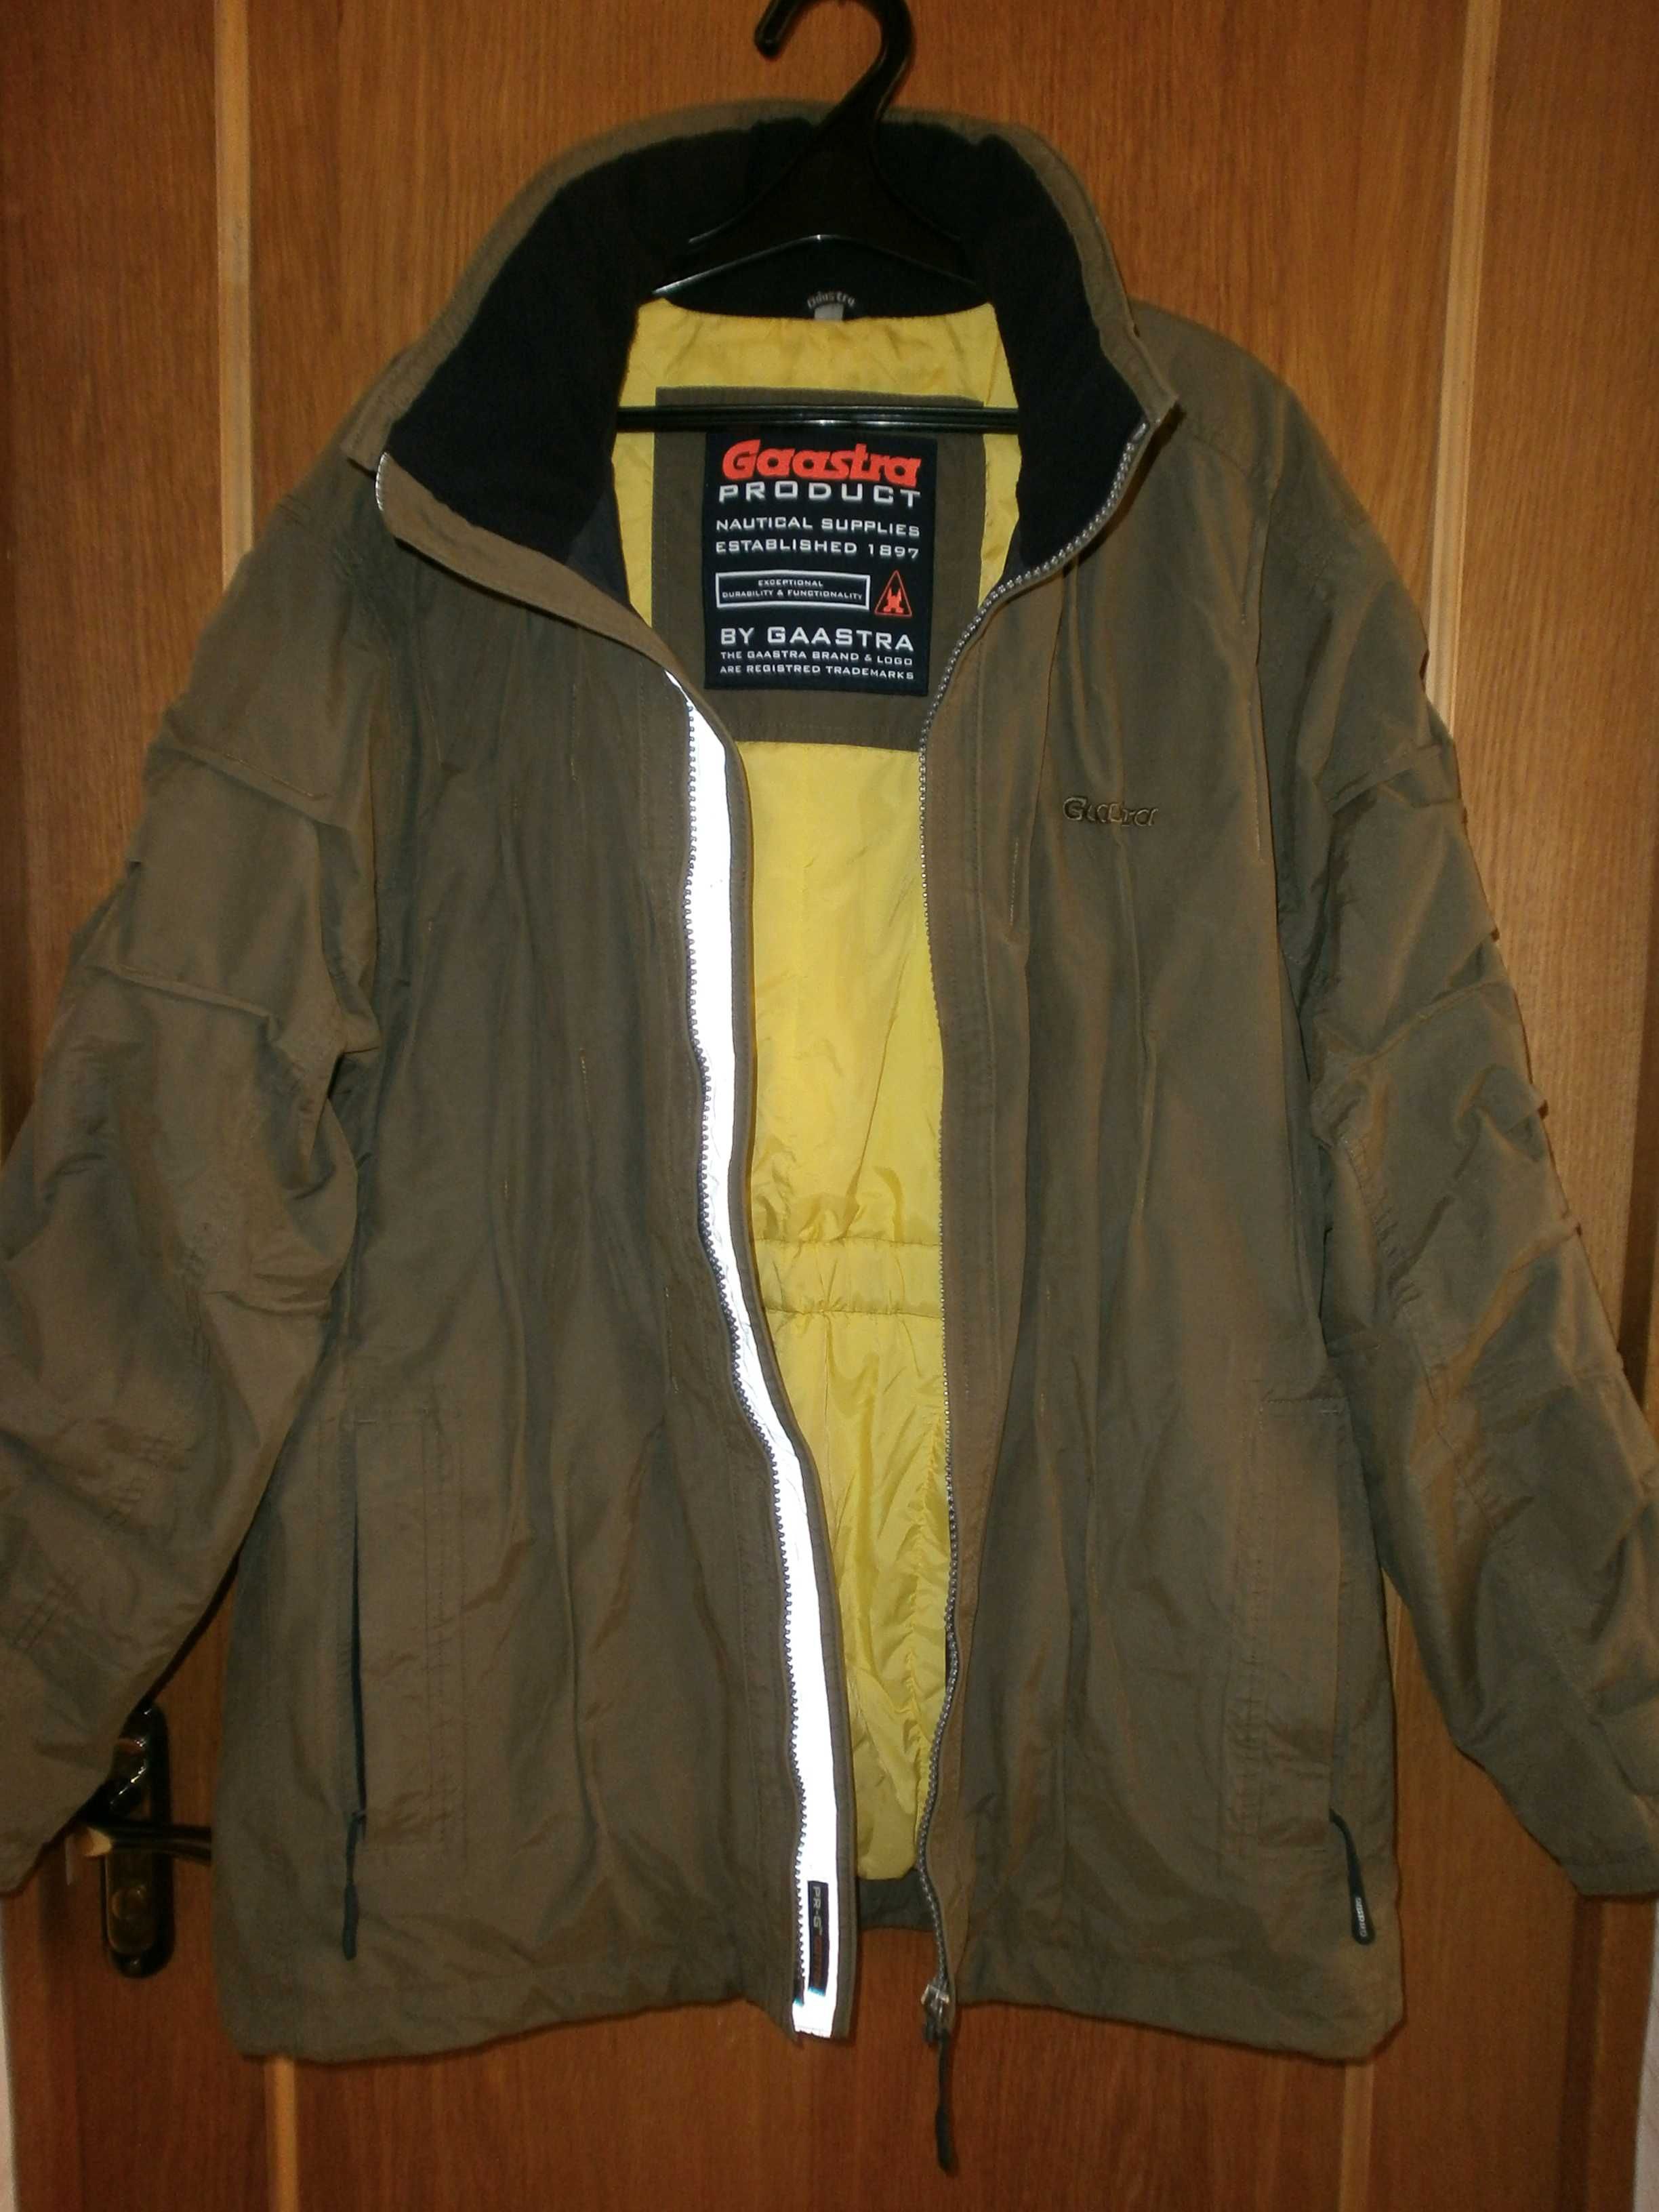 Куртка милитари IDpdt, олива, разм. L, наш 54. ПОГ-62 см. С подстёжкой